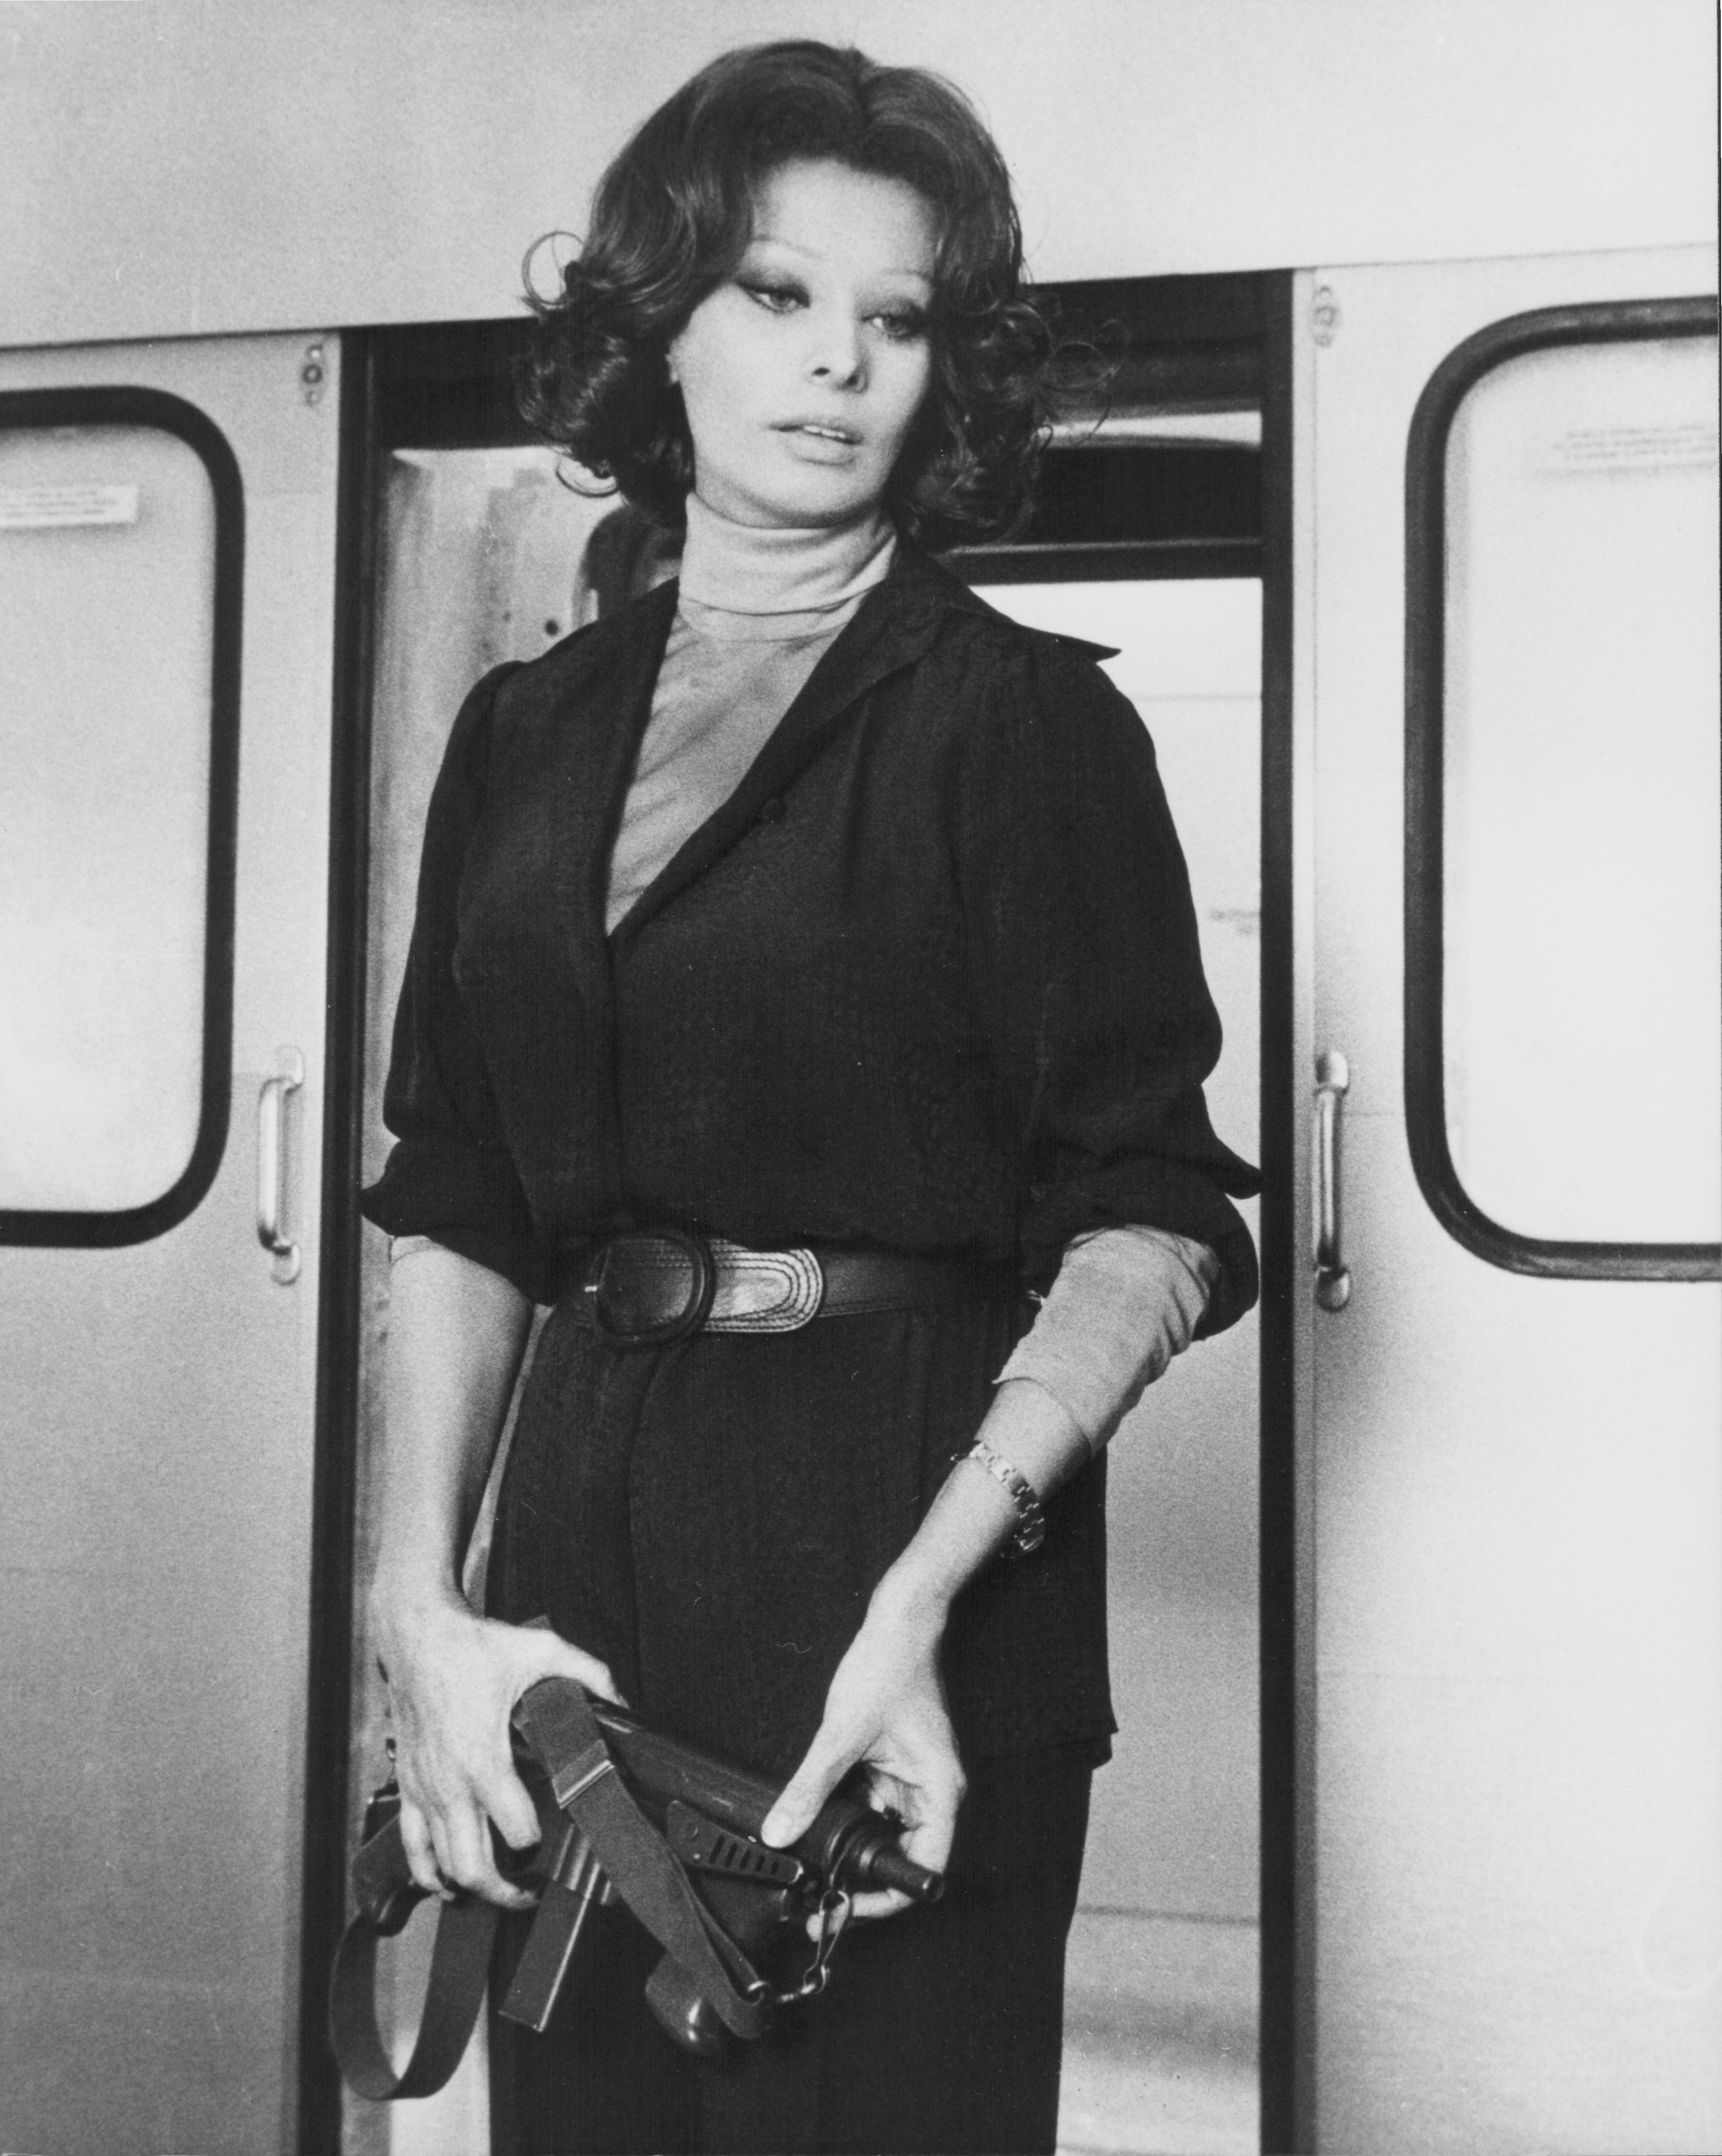 Still of Sophia Loren in The Cassandra Crossing (1976)